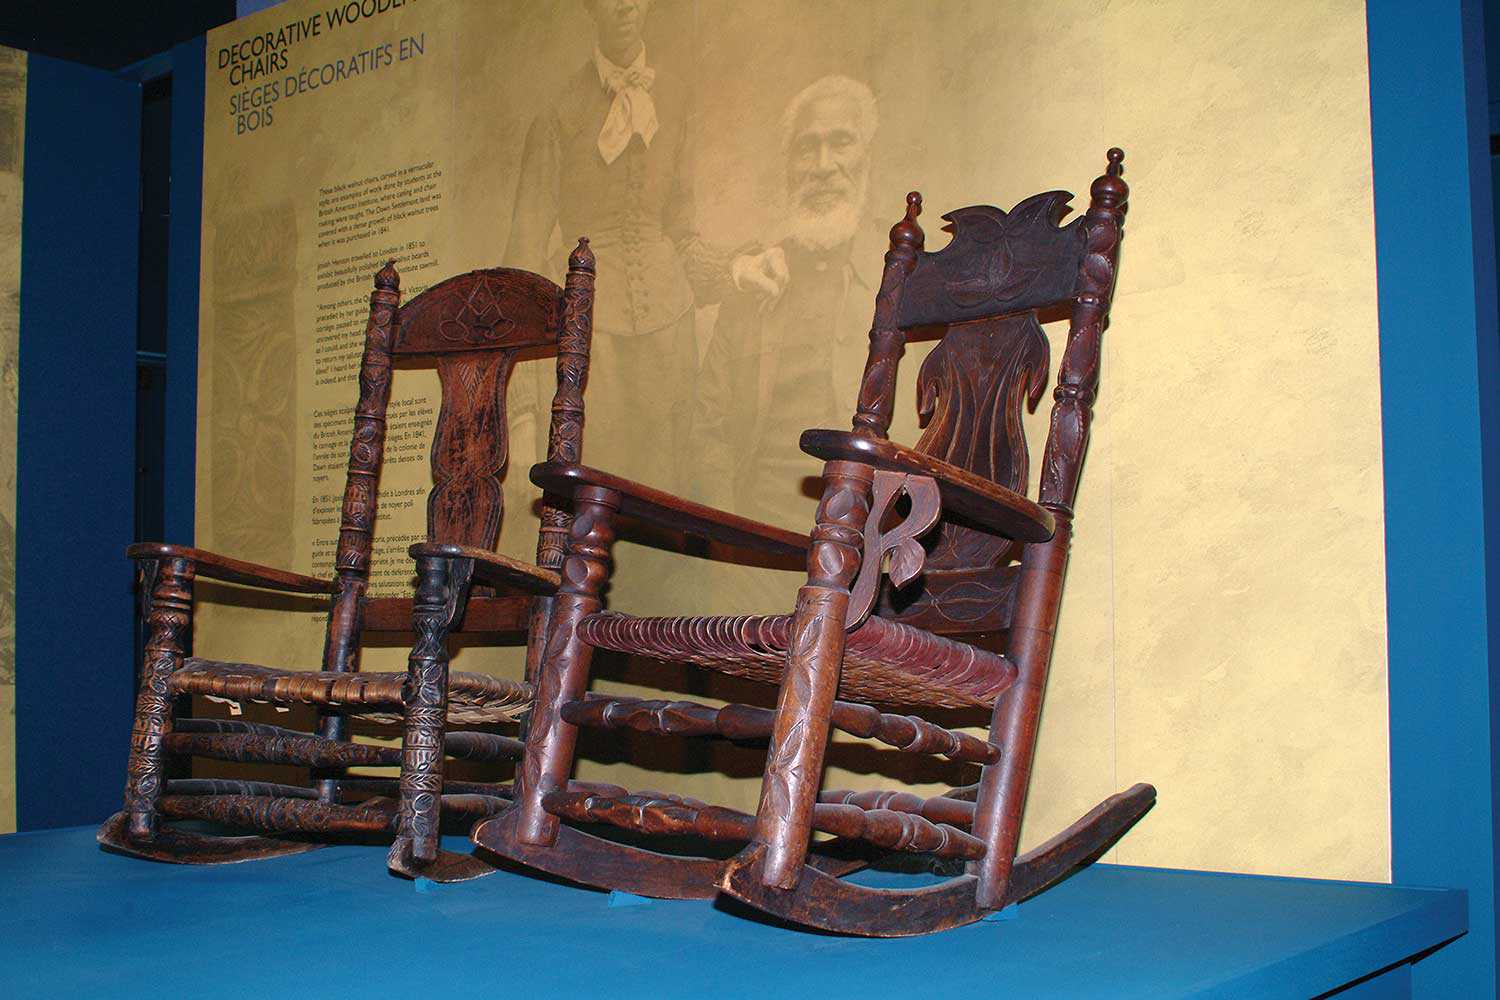 Ces chaises sculptées sont exposées en permanence au site historique de la Case de l’oncle Tom, à Dresden. Consultez le site www.uncletomscabin.org pour obtenir de plus amples renseignements.